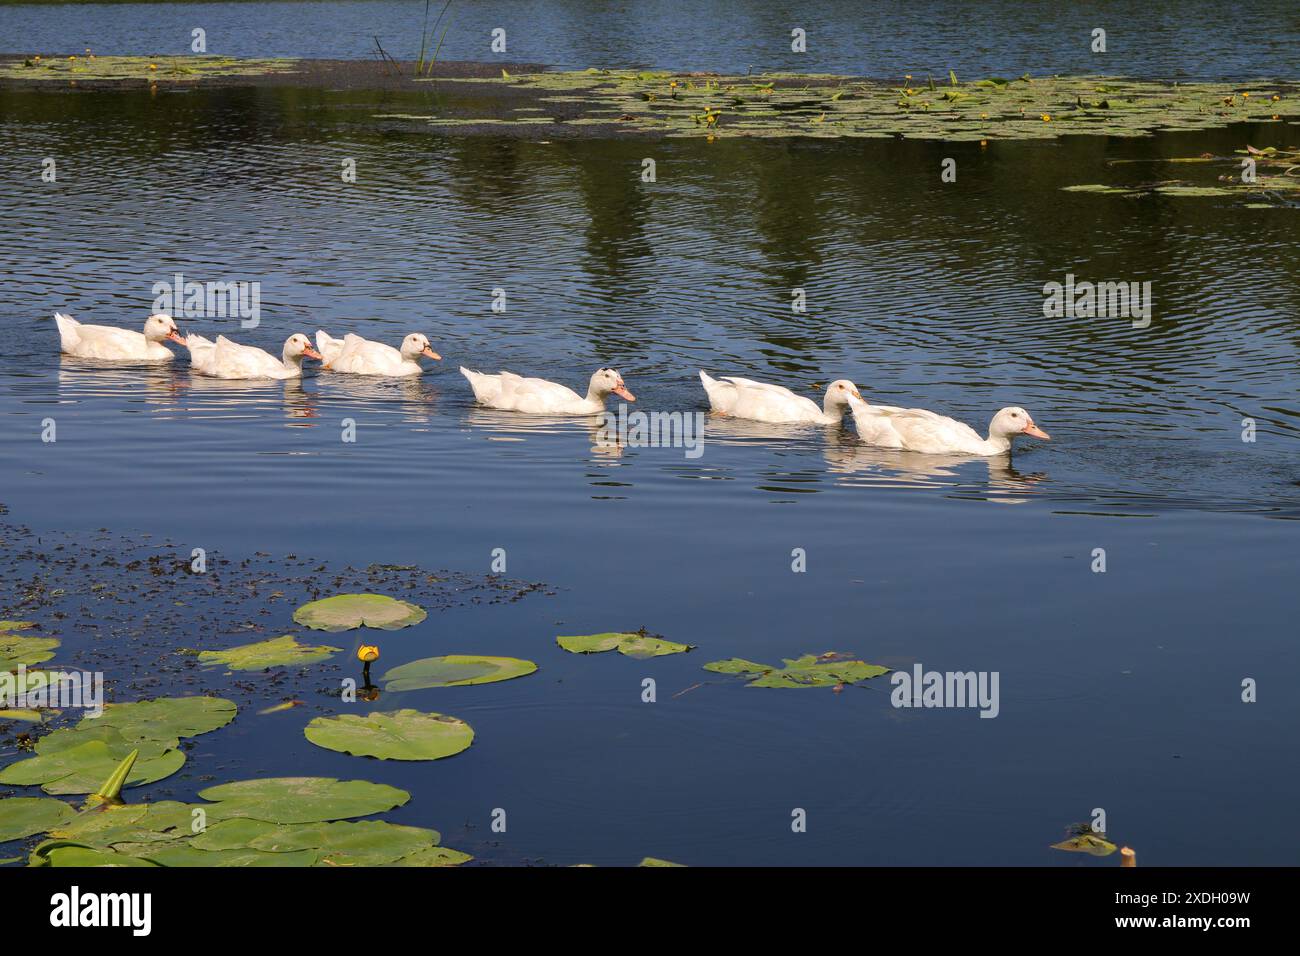 La photo a été prise en Ukraine, sur la rivière South Bug. Sur la photo un troupeau d'oies flottant le long de la rivière. Banque D'Images